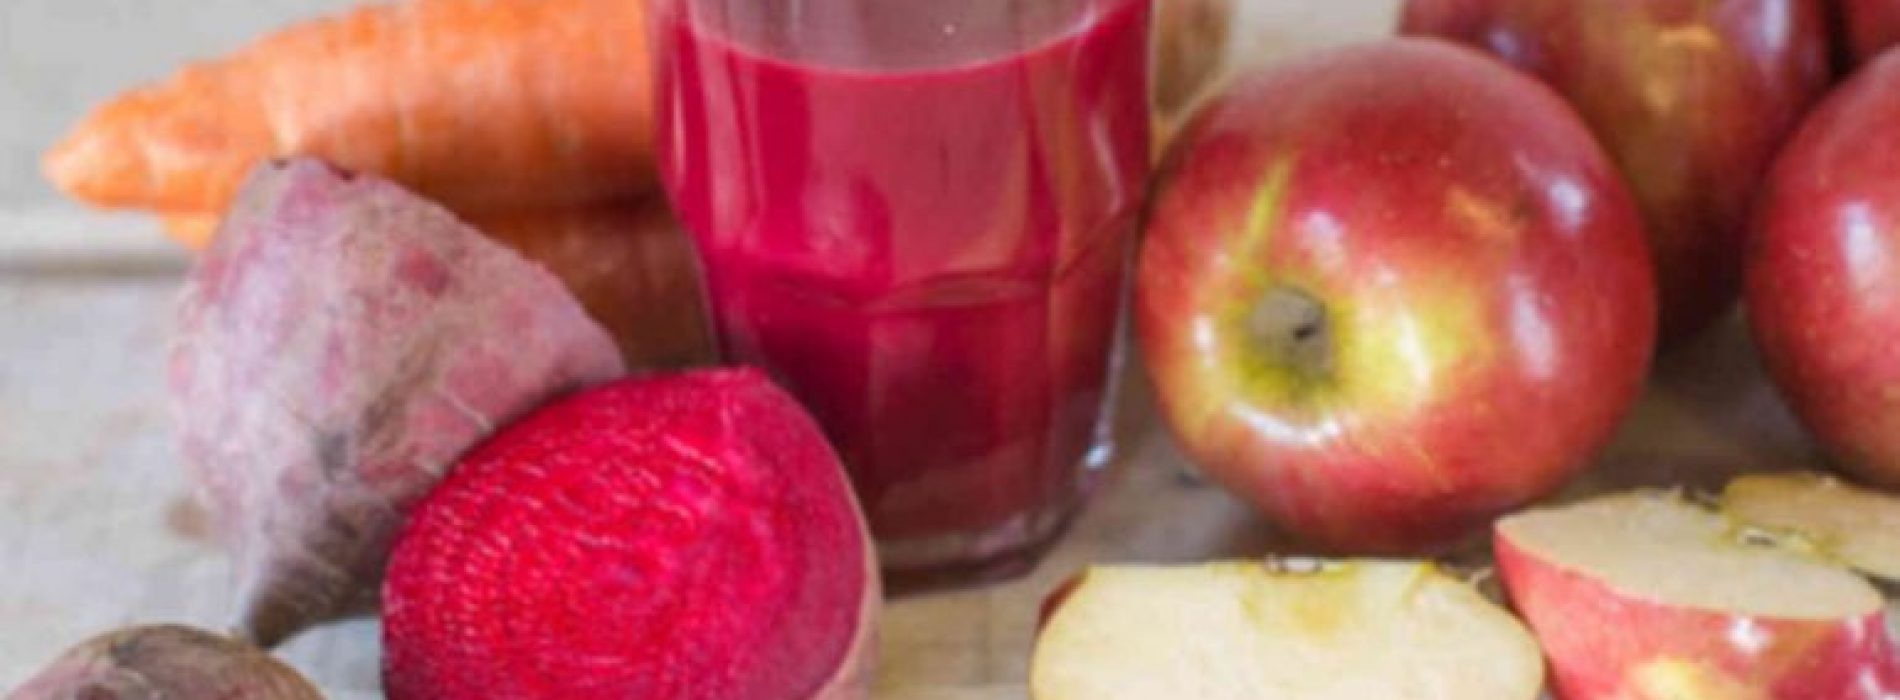 Wat krijg je als je bieten, wortelen en appels mengt? Een glas sap dat vele ziekten vernietigt!